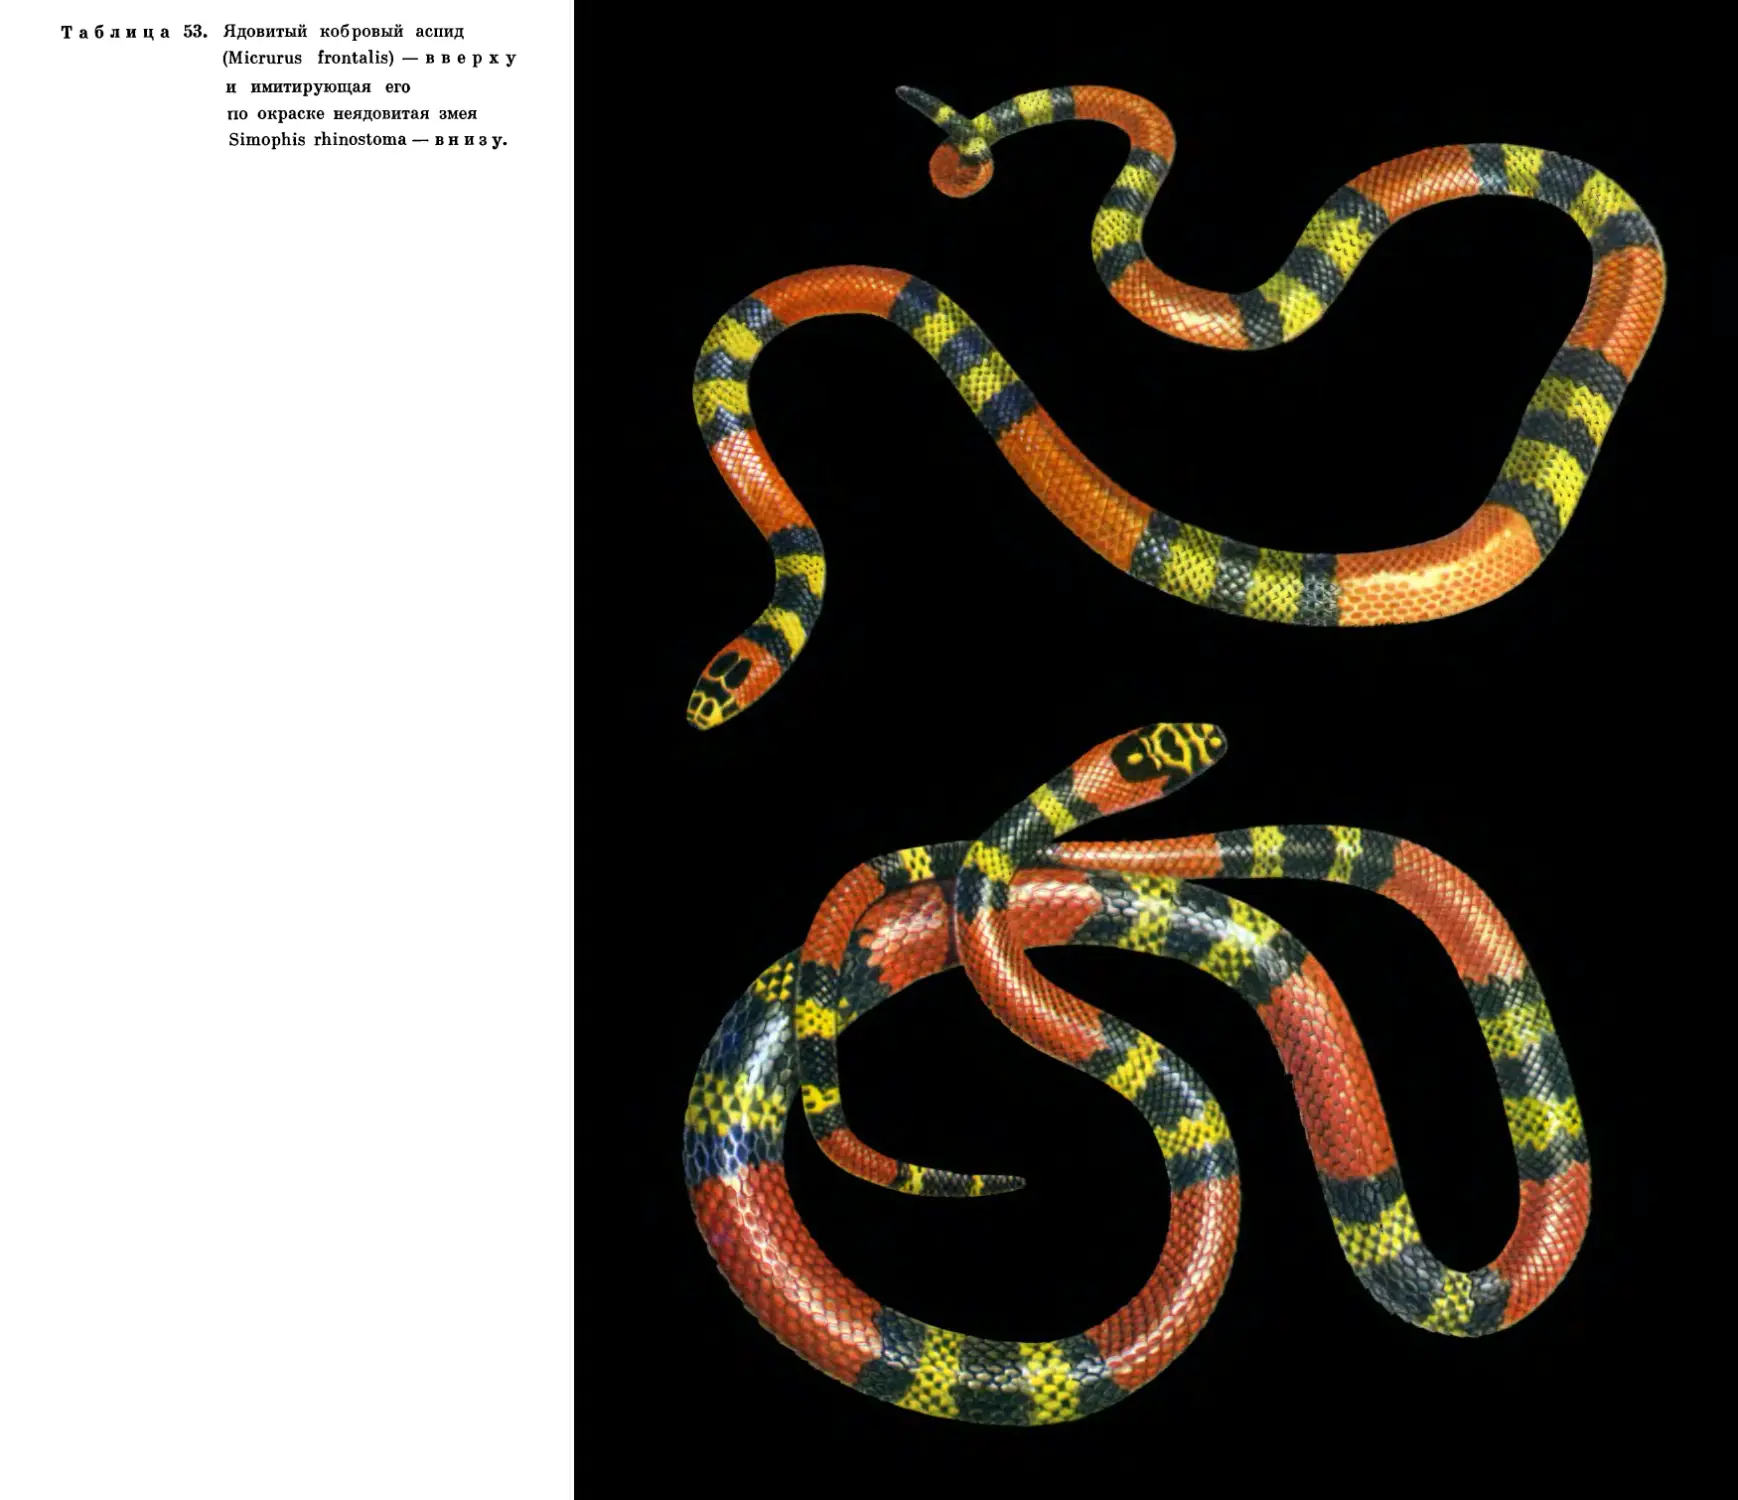 53. Ядовитый кобровый аспид и неядовитая змея Simophis 
        rhinostoma